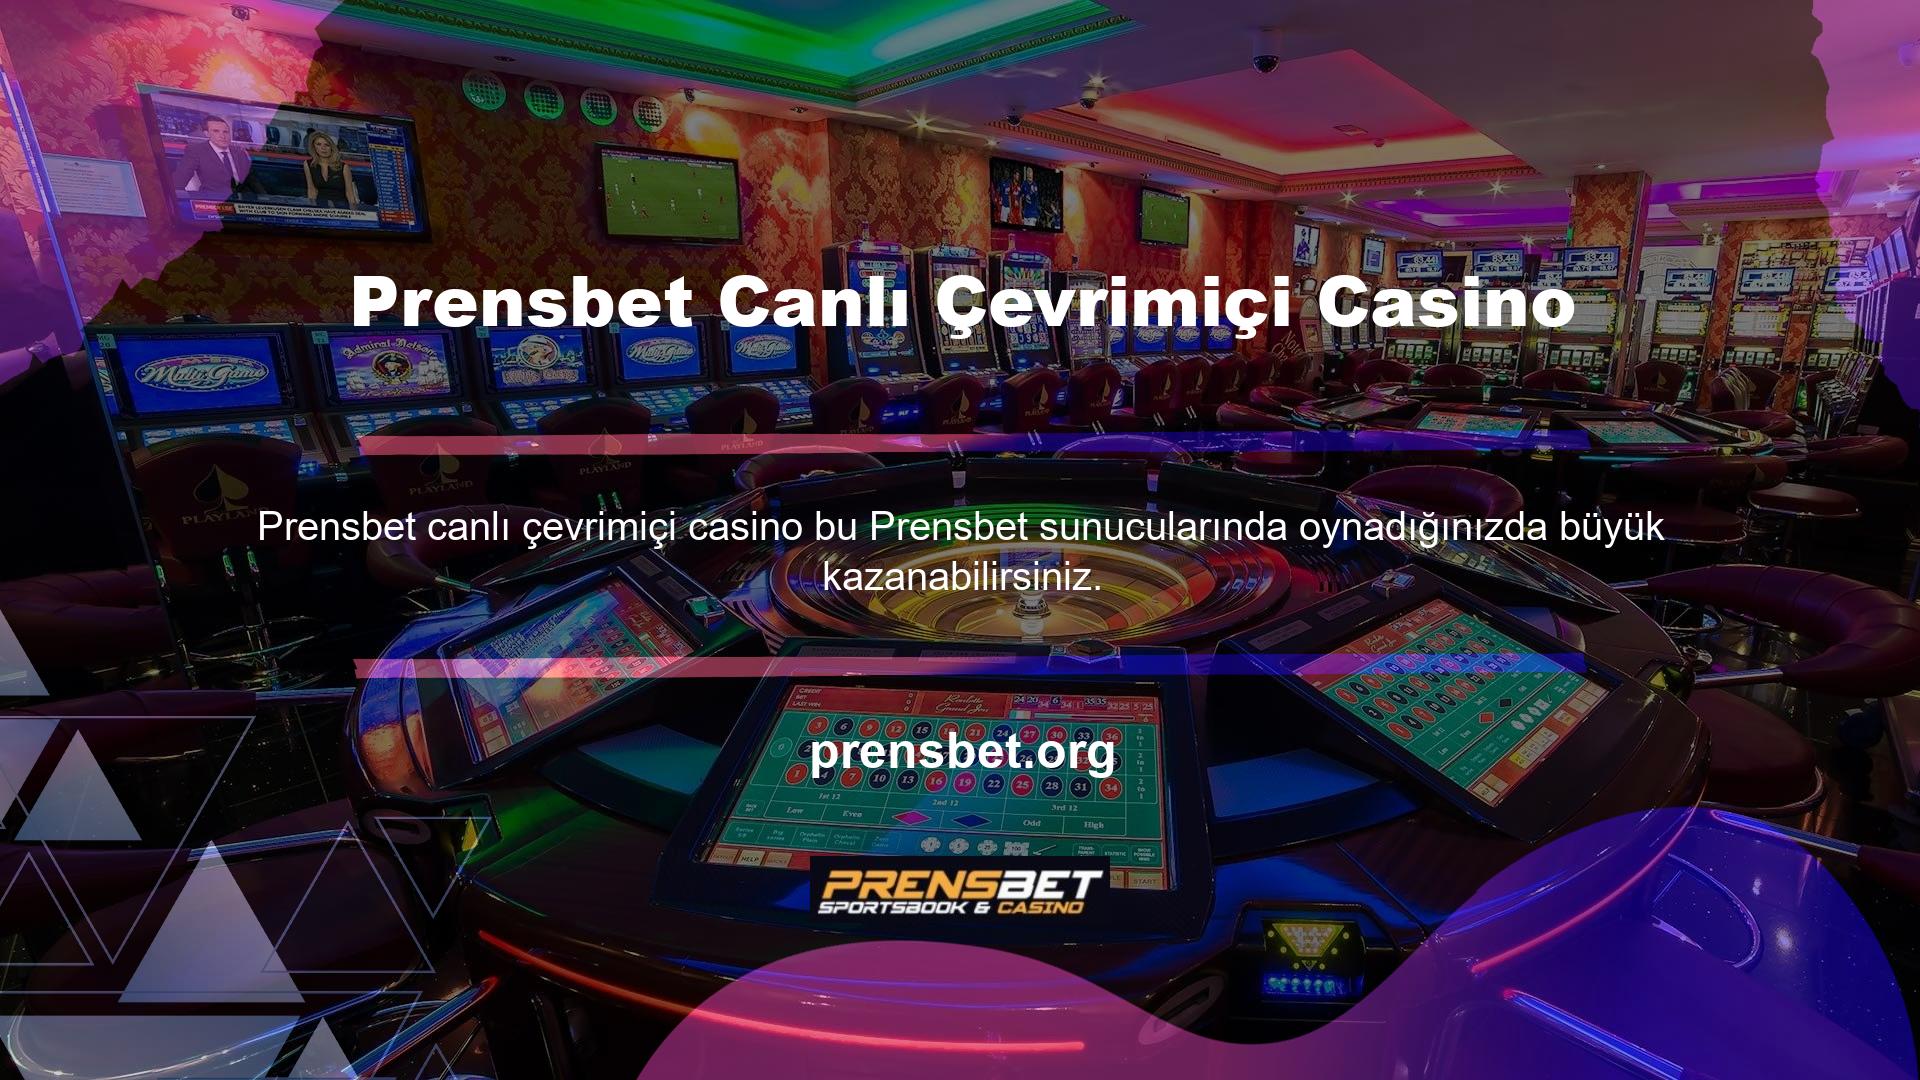 Ayrıca Prensbet Canlı Online Casino, canlı casino oyunlarında harika bonuslar kazanmanız için sizi bekliyor